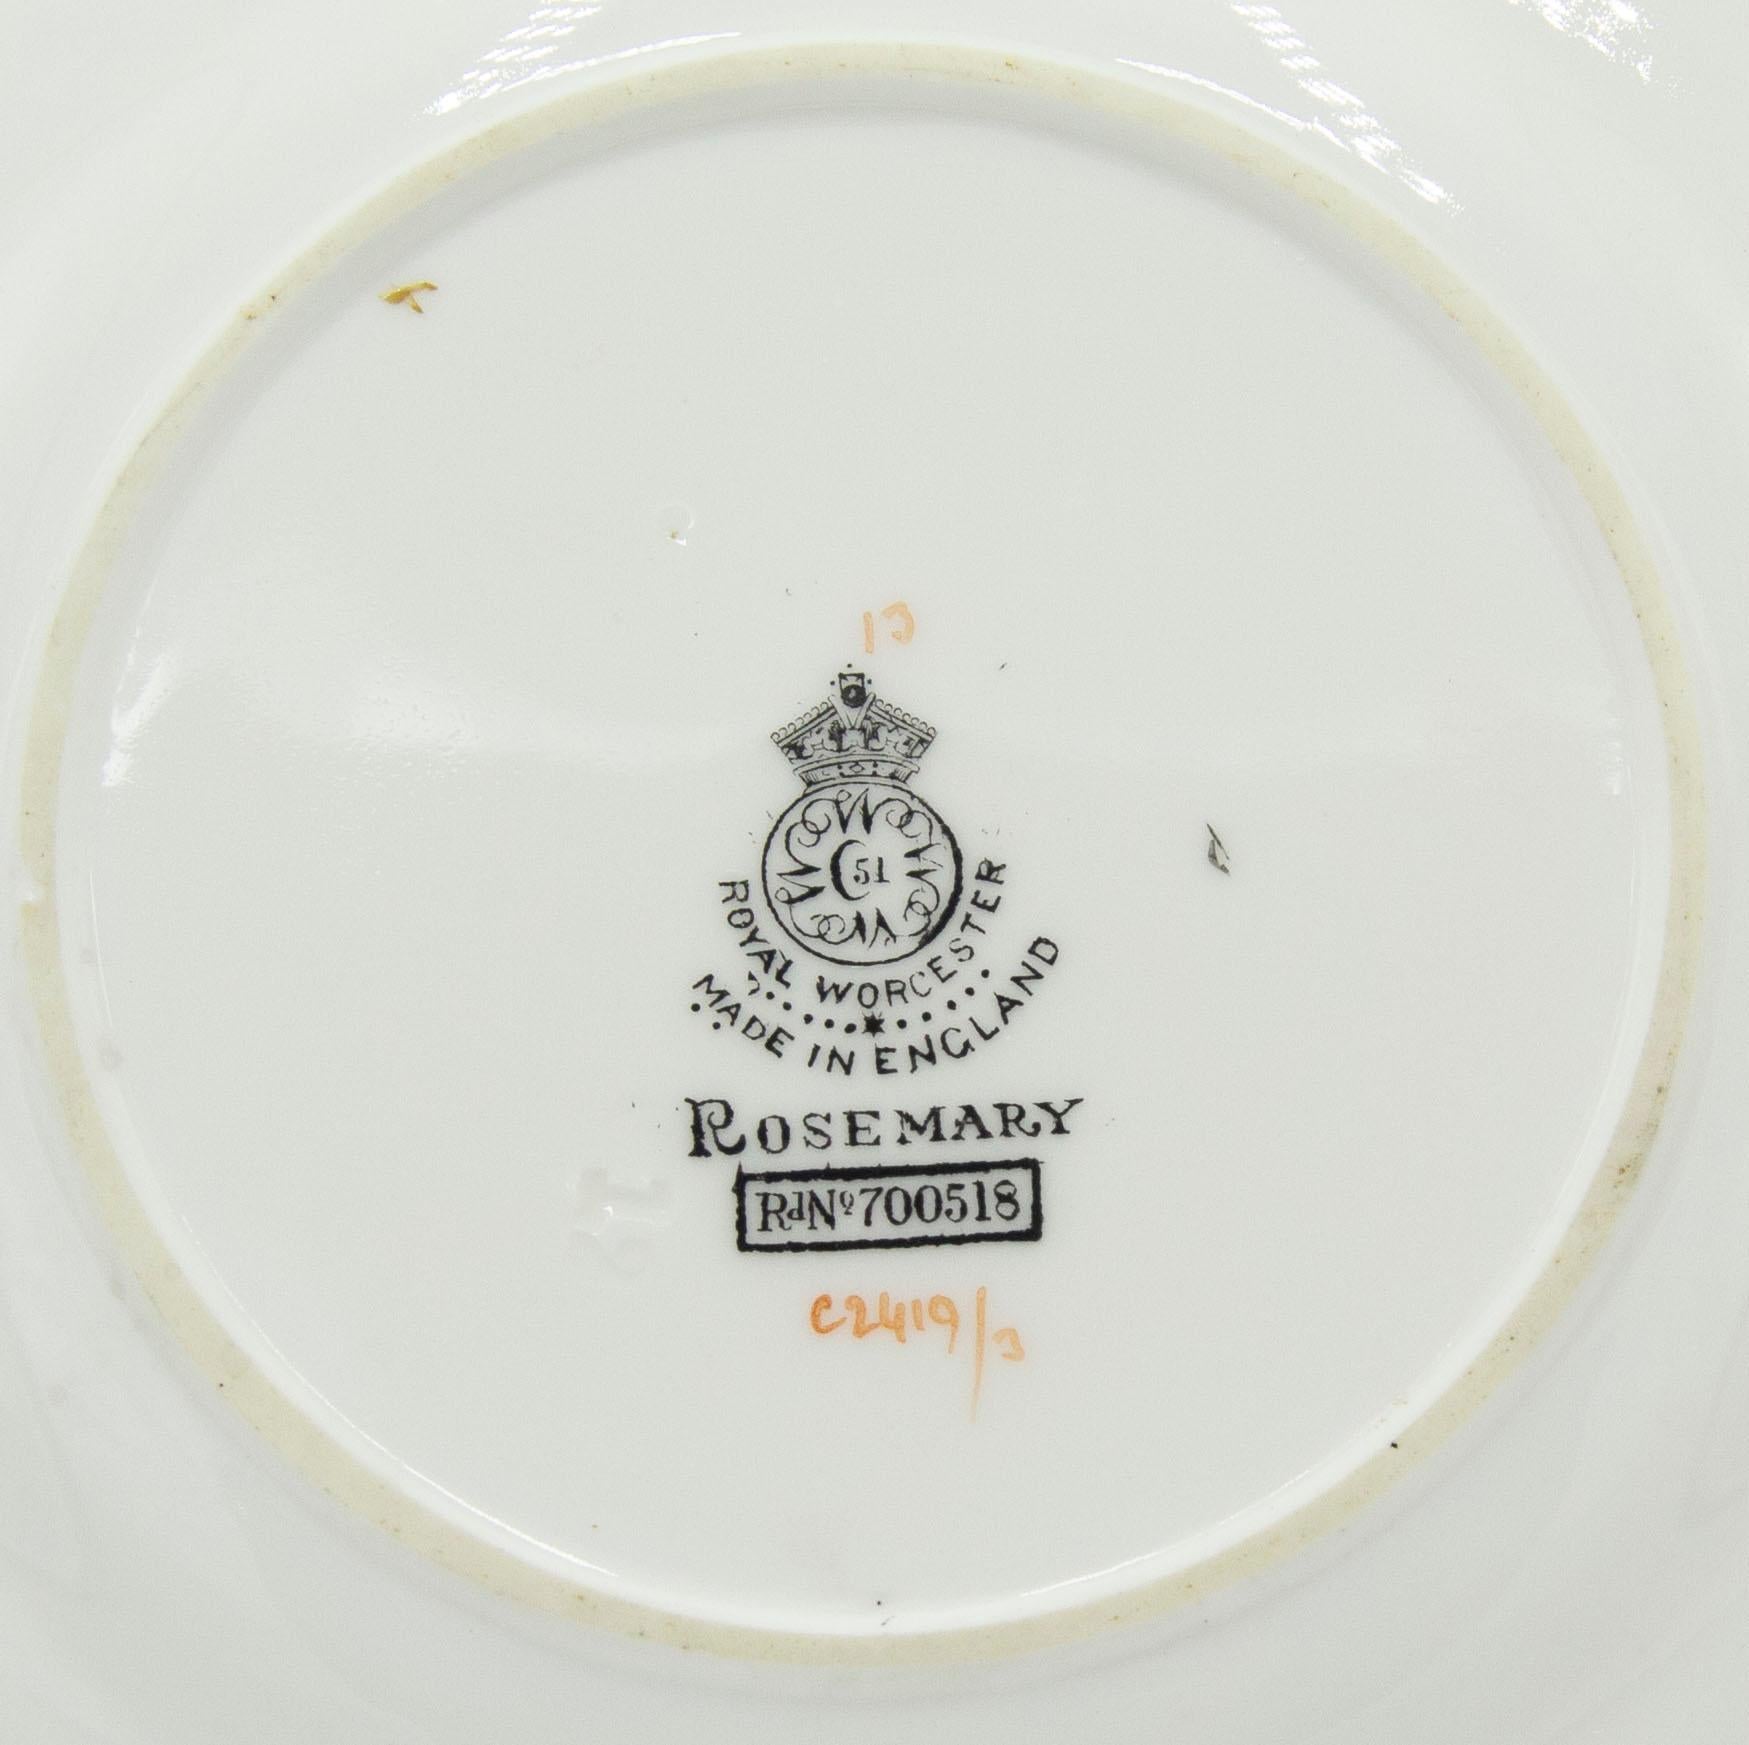 30-teiliges englisches Tafelservice aus weißem und blauem Porzellan mit Urnen- und Girlandenmotiv (Royal Worcester, Rosmarin-Muster) (8 Tassen, 8 Suppenschalen, 7 Teller, 7 Untertassen).
 